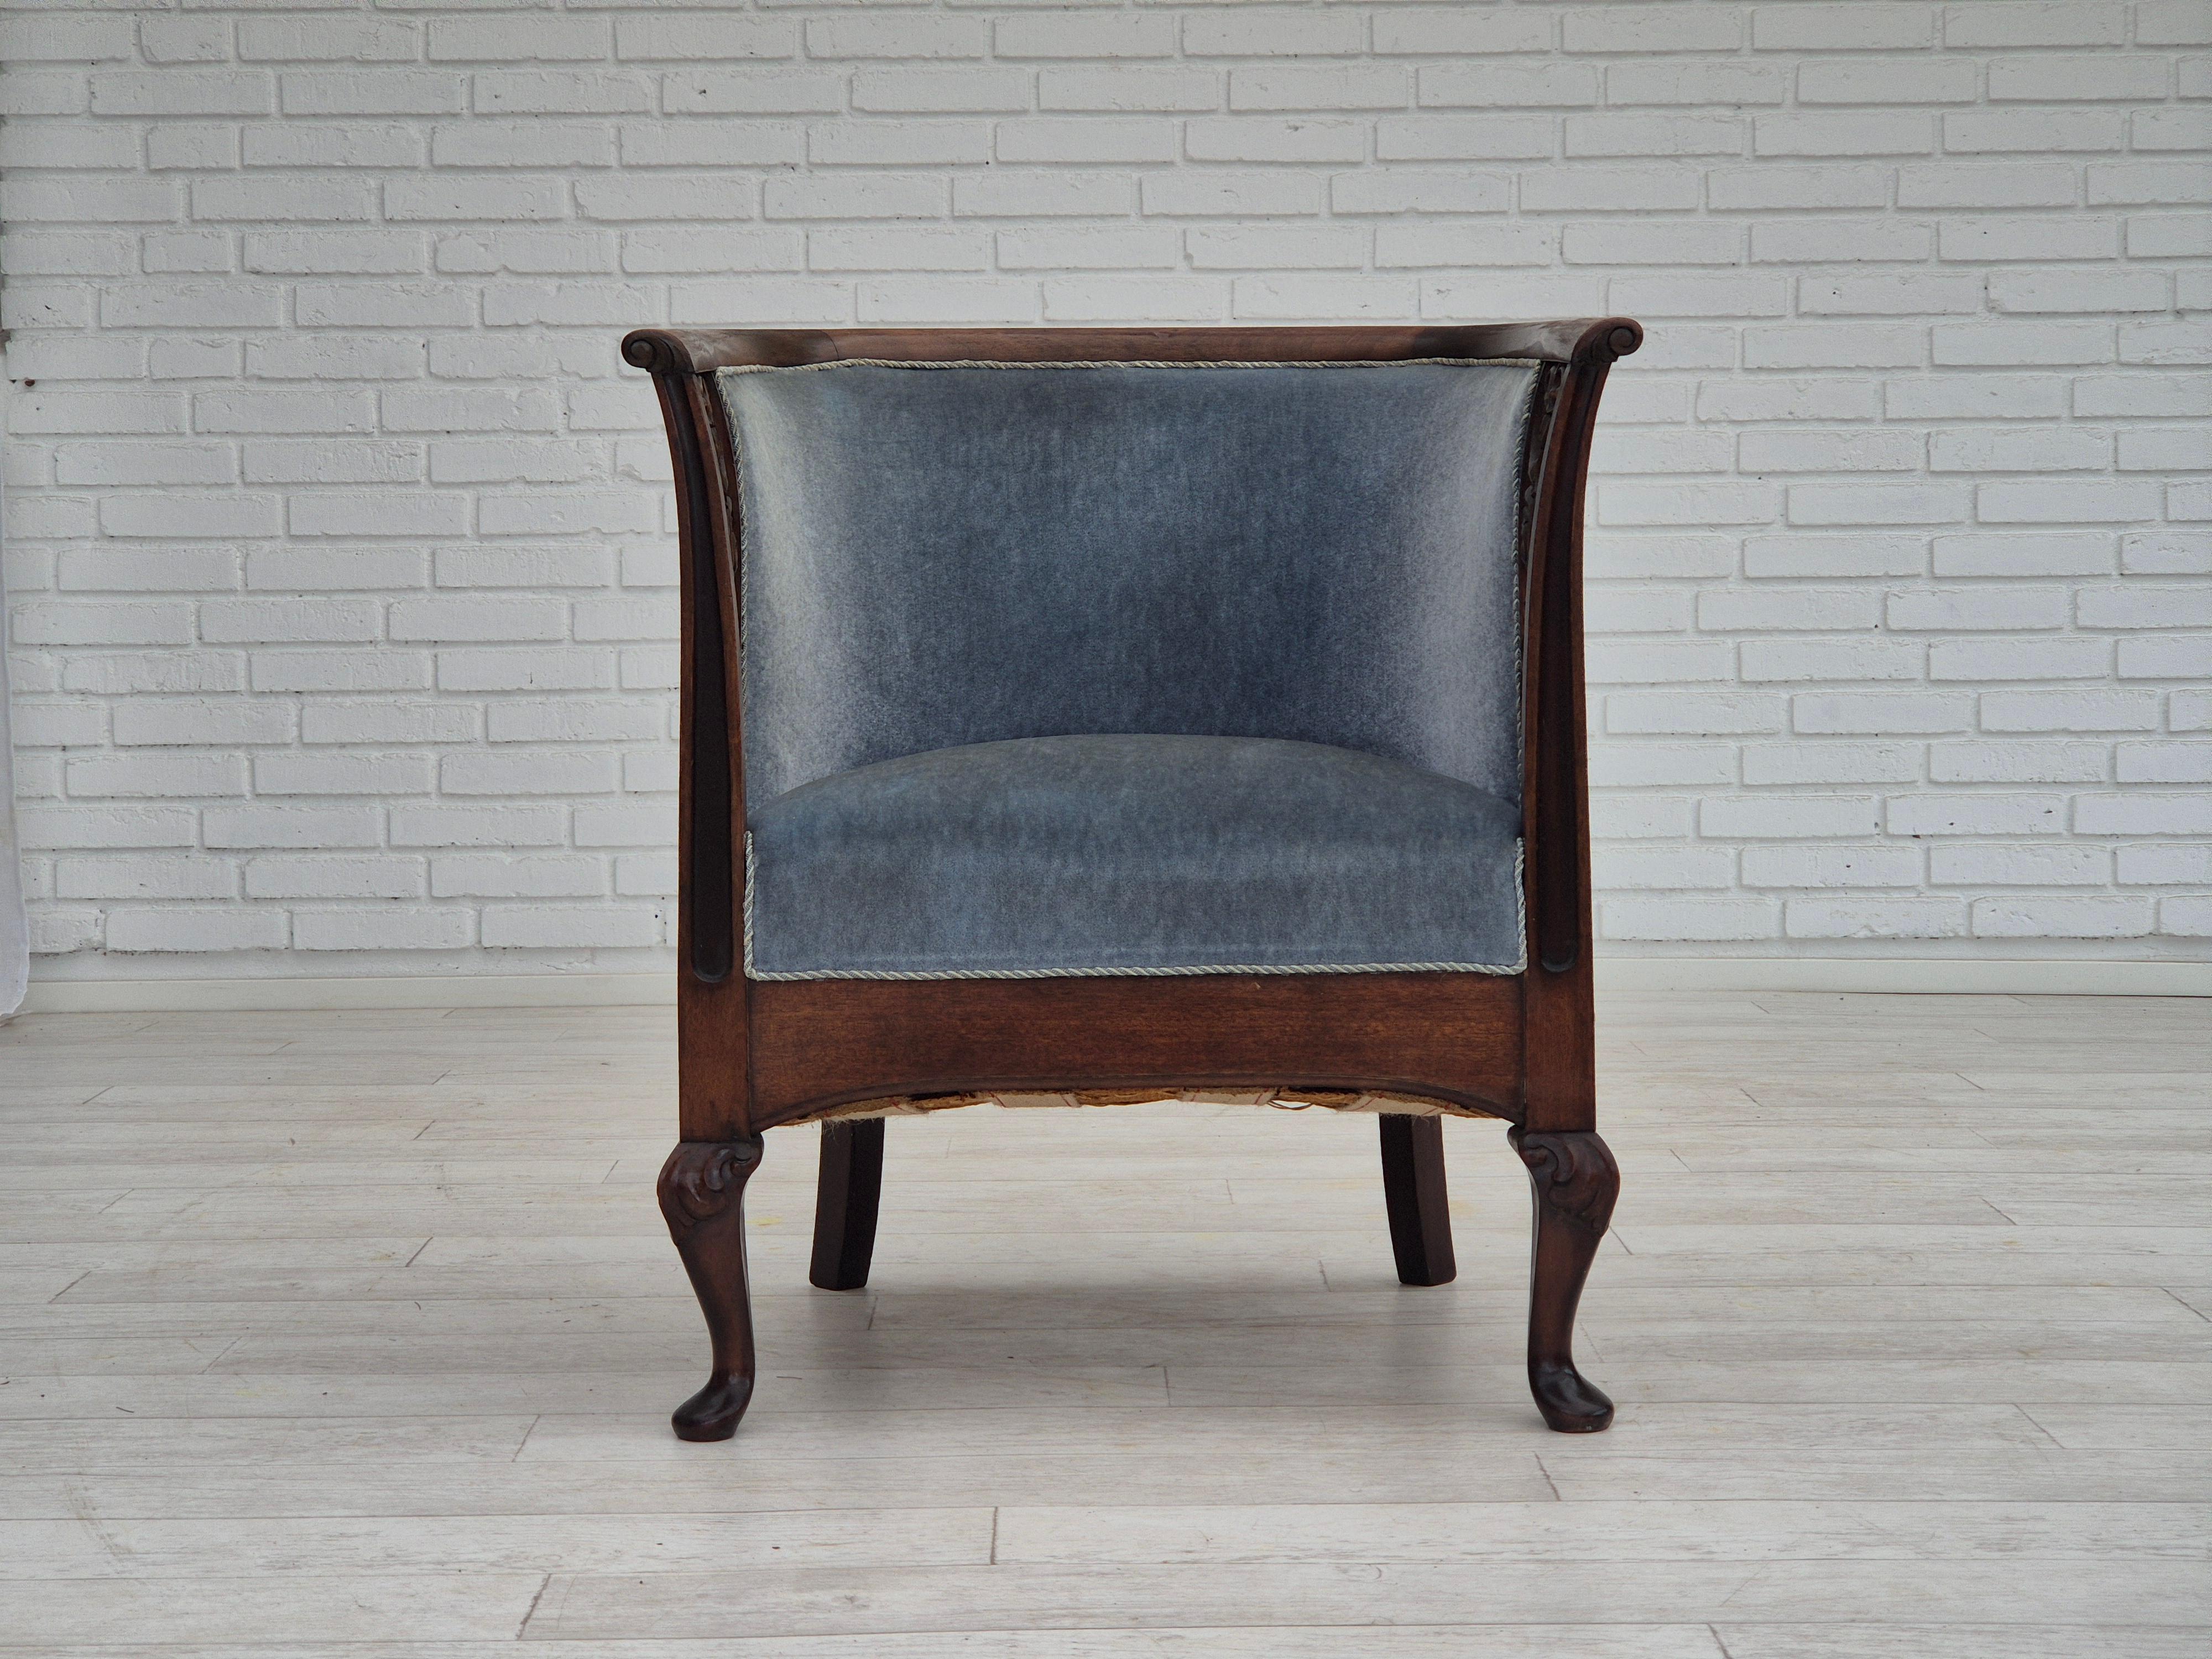 Années 1950, Design/One. Chaise longue en très bon état d'origine : pas d'odeur ni de tache. Accoudoirs sculptés à la main. Velours d'ameublement bleu clair d'origine. Bois d'acajou, ressorts en laiton dans l'assise. Fabriqué par un fabricant de